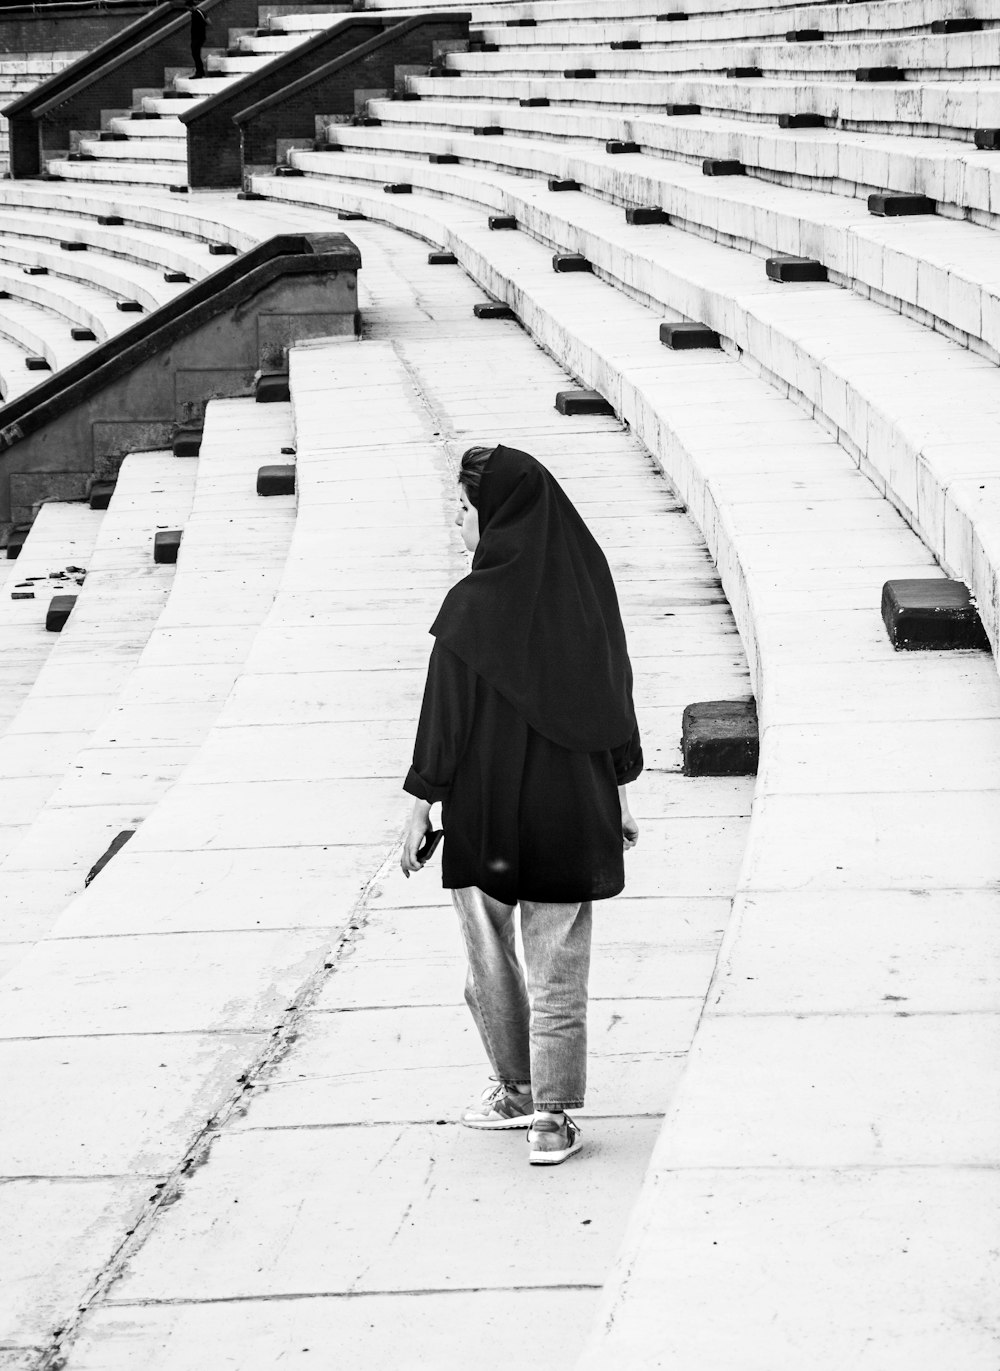 Eine Frau in einem schwarzen Schal, die in einem Stadion spazieren geht